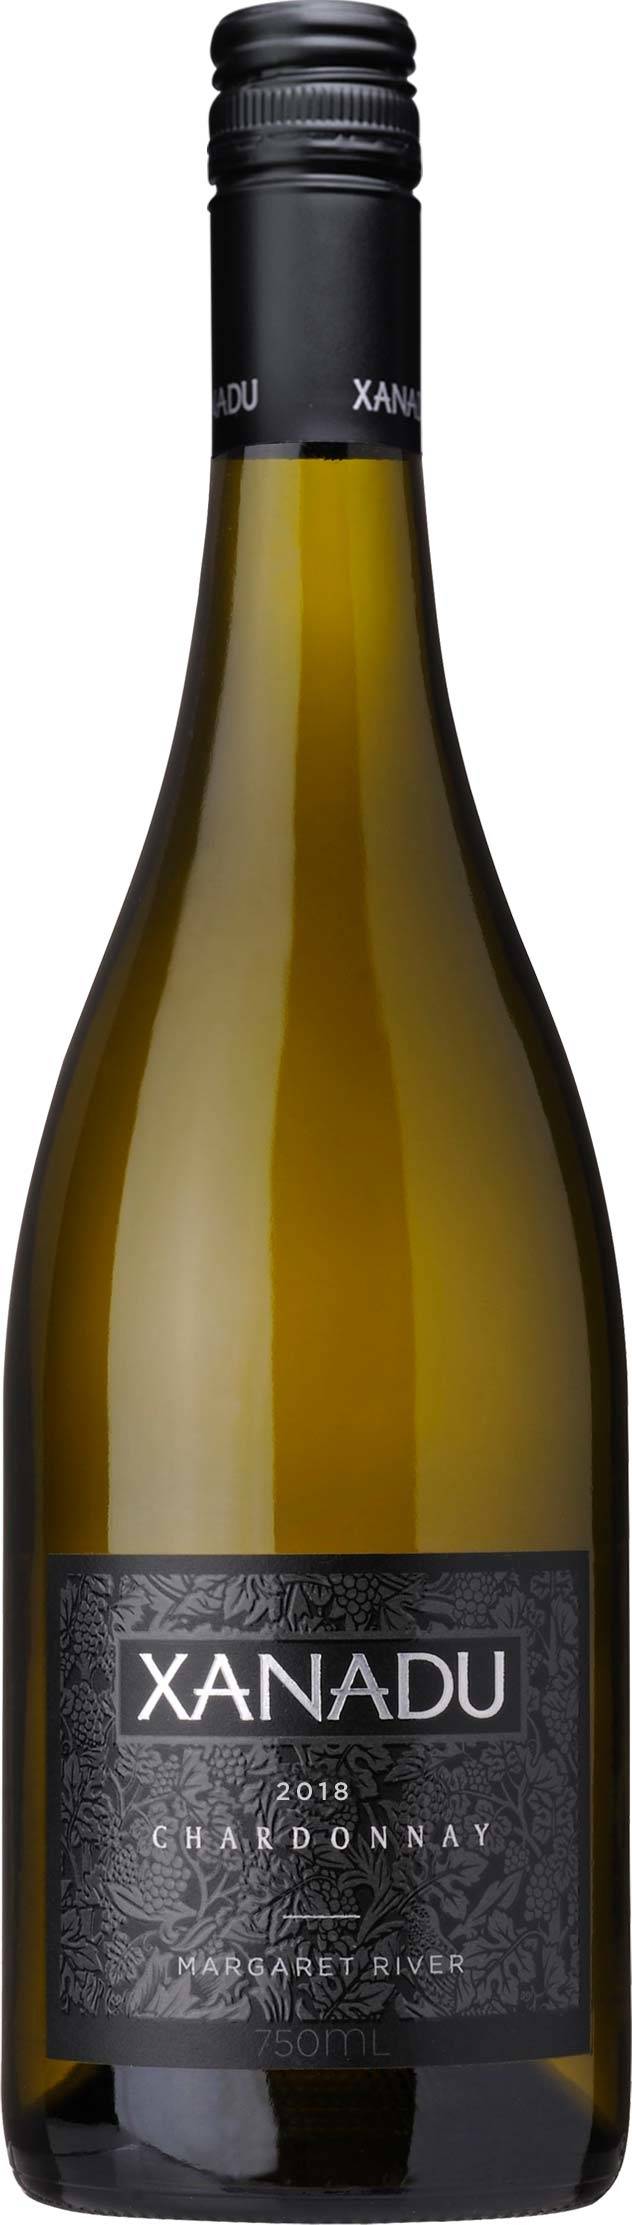 Xanadu Chardonnay 750ml